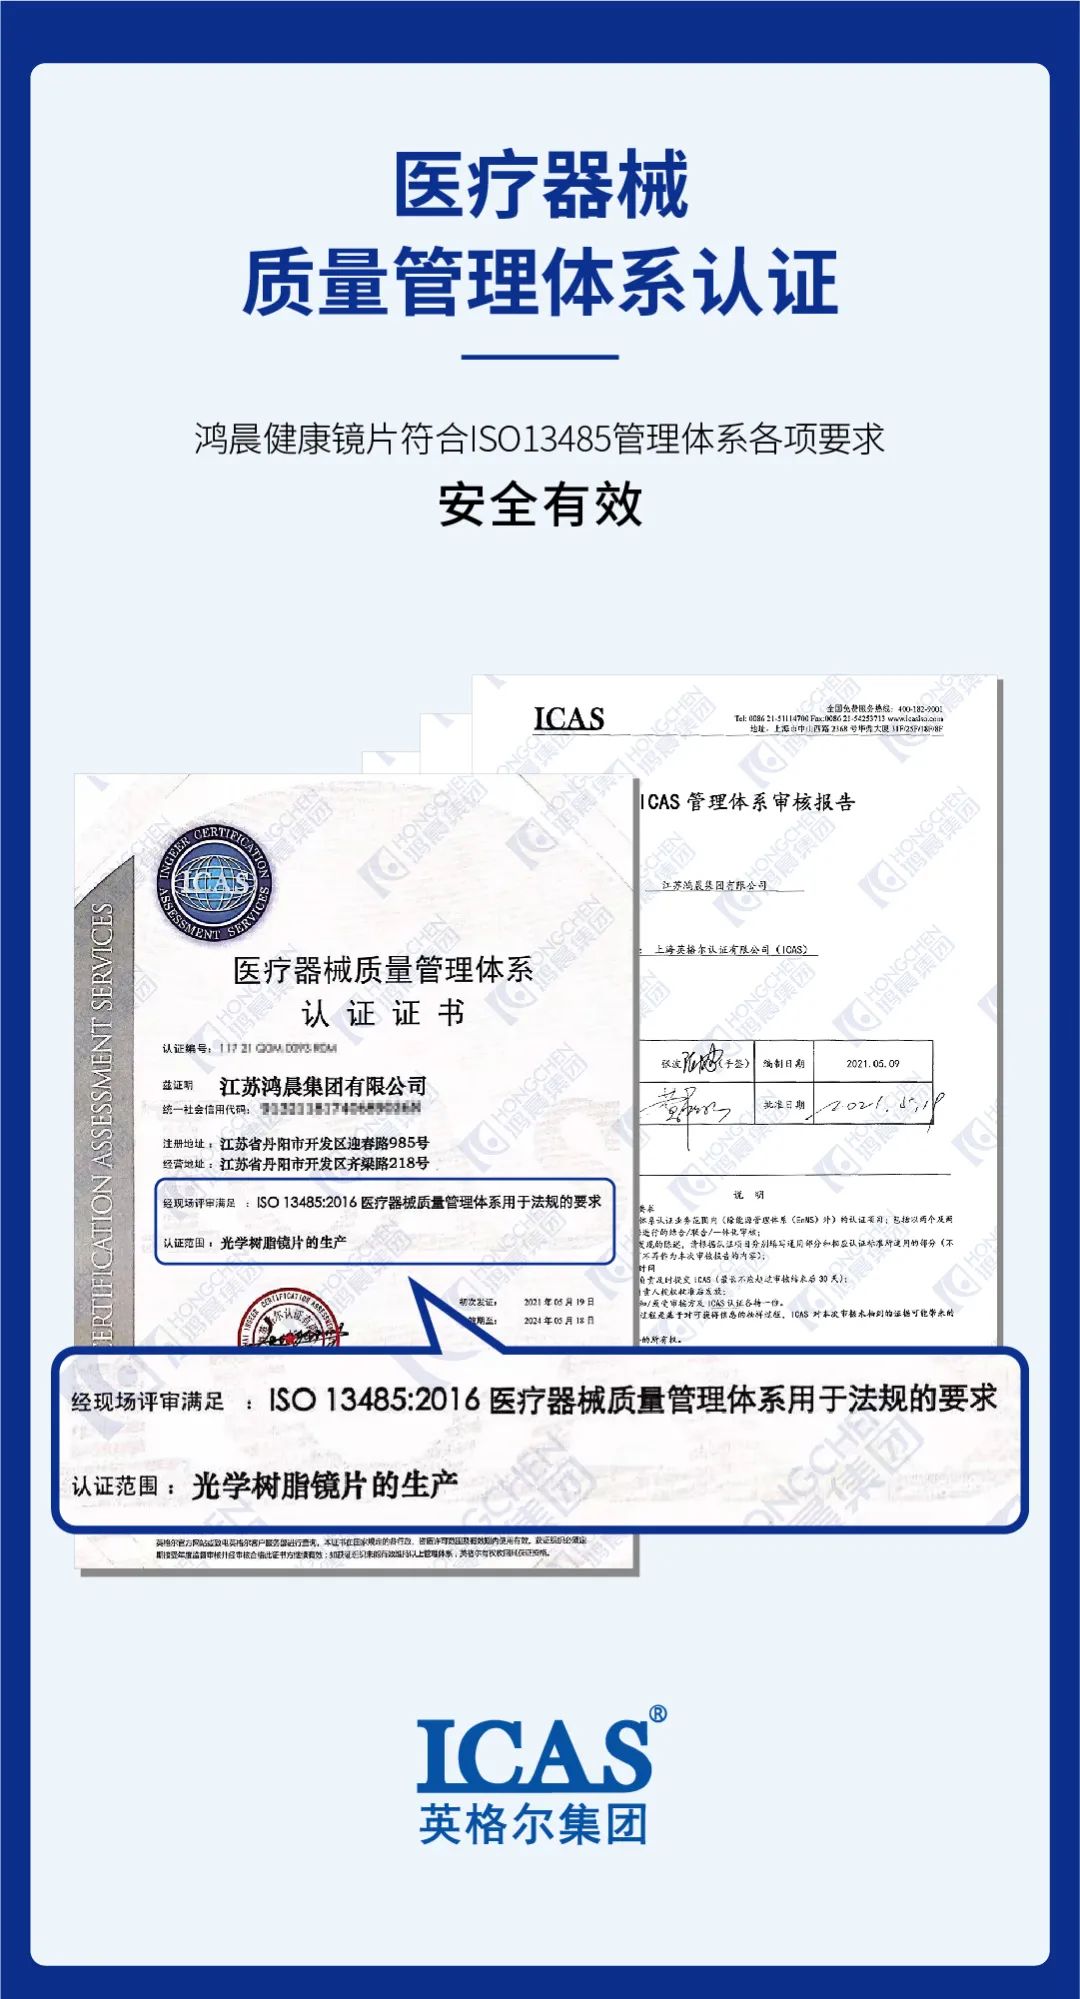 Die Hongchen-Linse hat die Zertifizierung des medizinischen Sicherheitssystems gewonnen